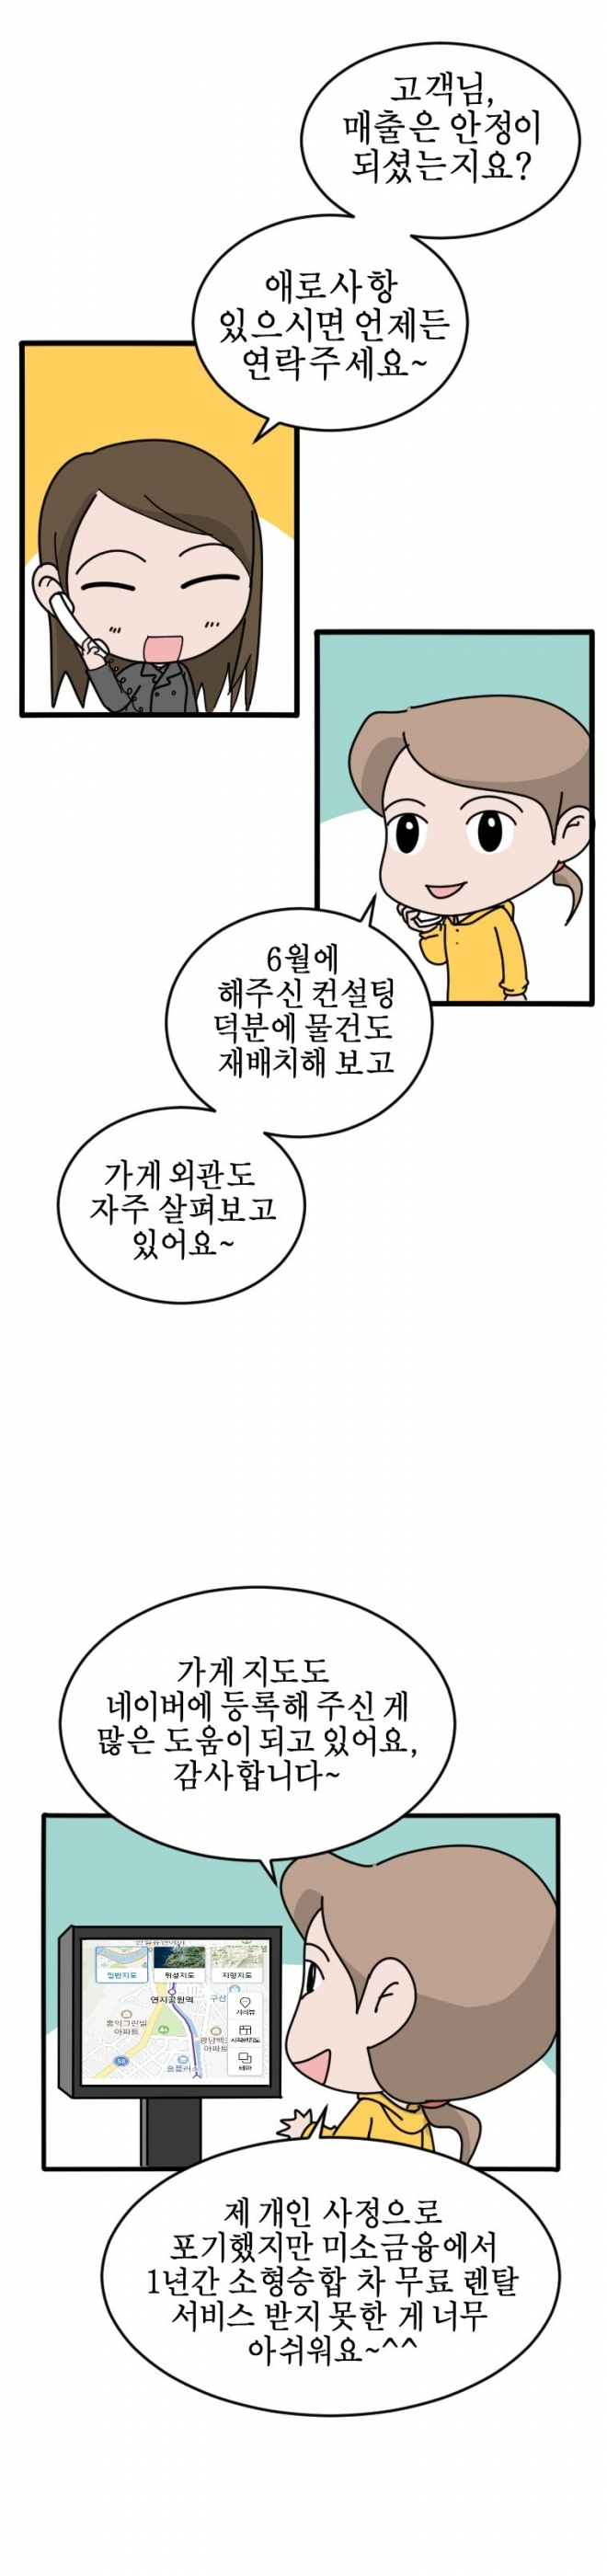 박지선씨의 이야기를 그린 웹툰 자몽 작가 제공 